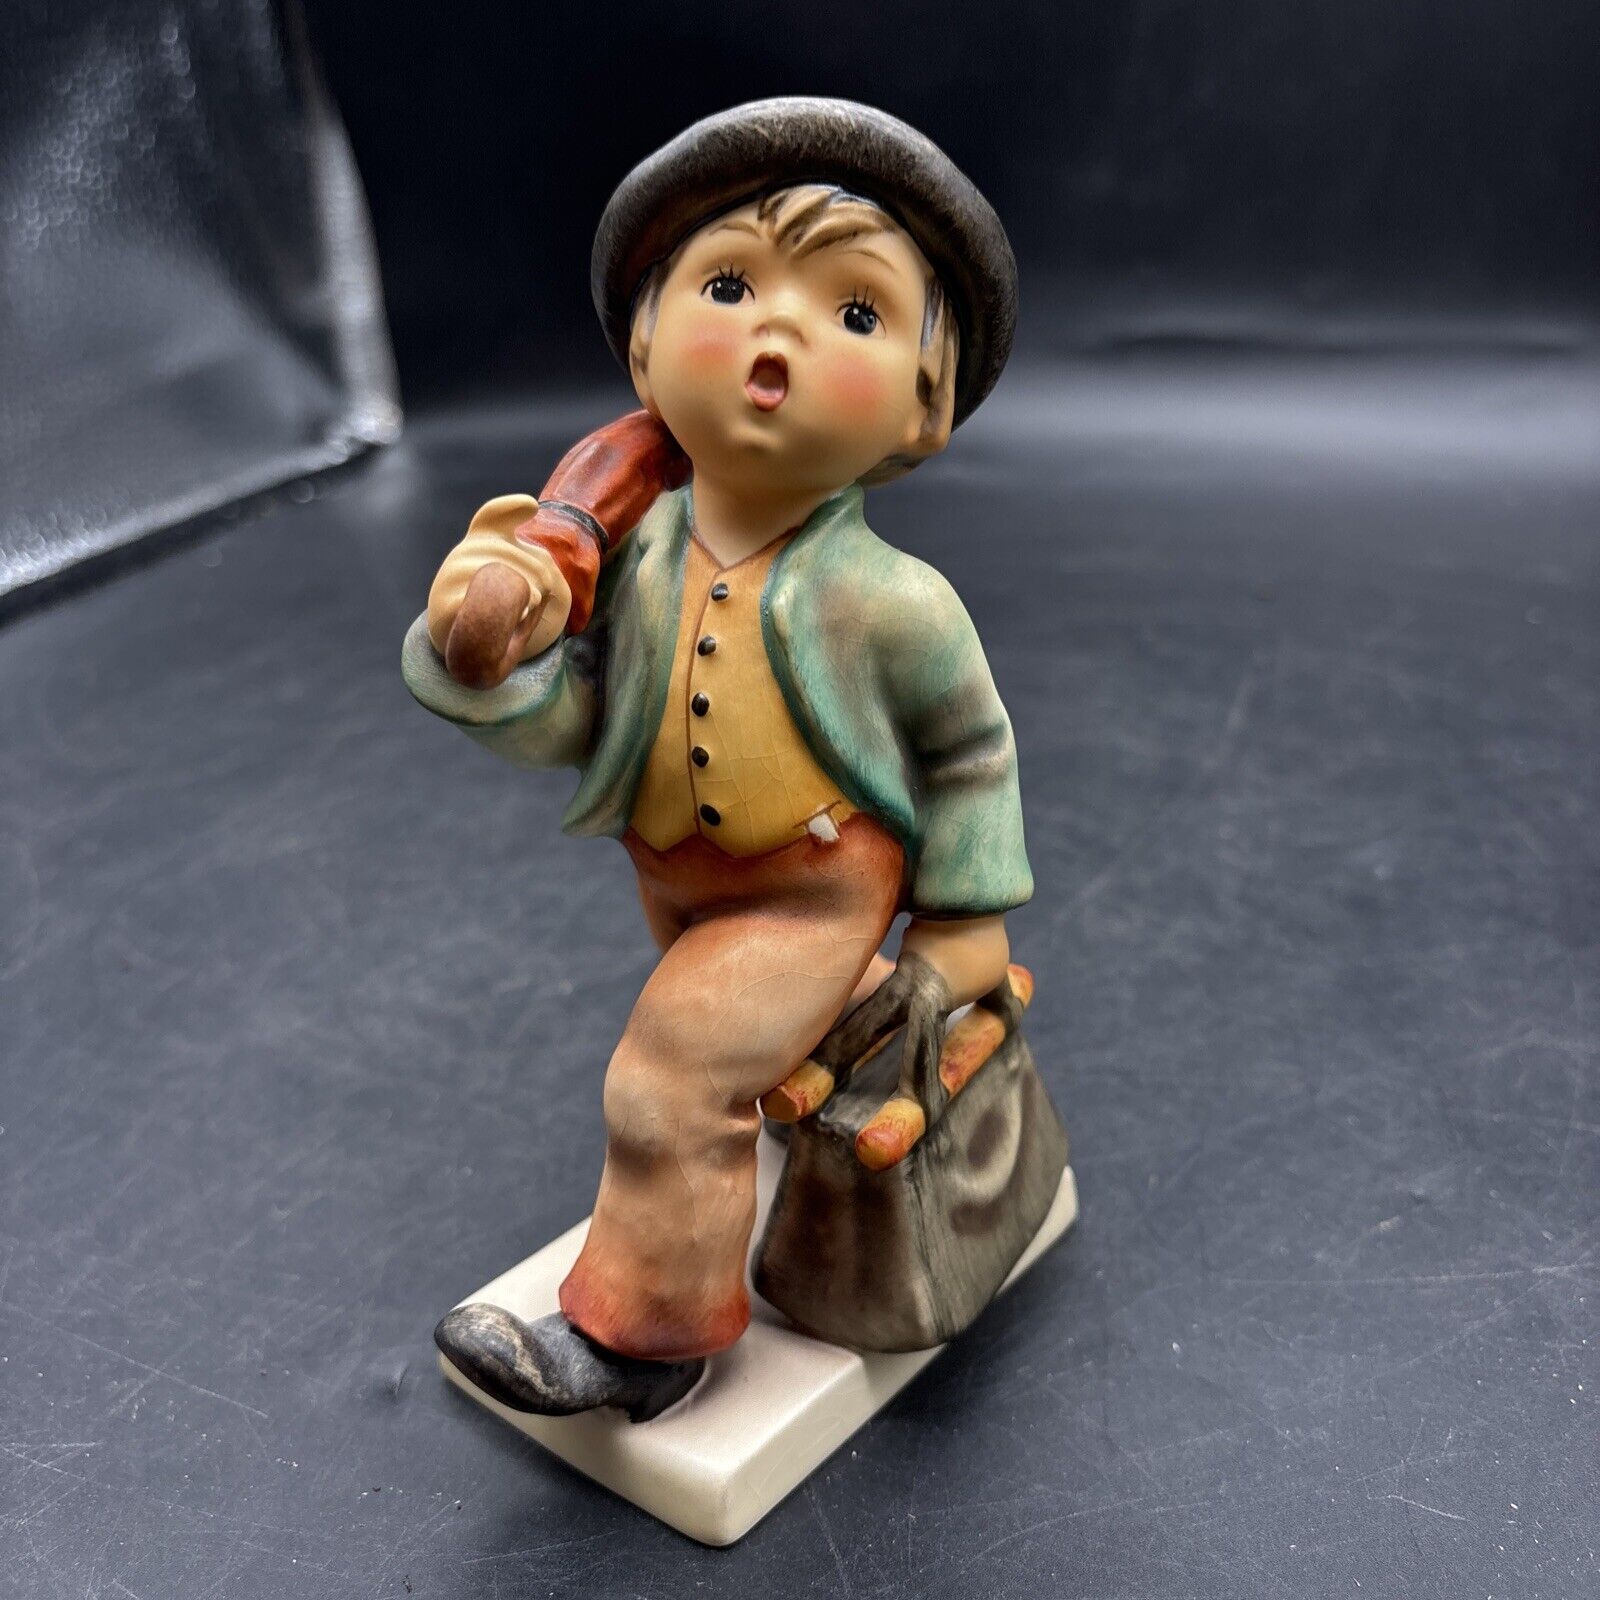 Hummel Merry Wanderer Boy Figurine Goebel W Germany, RARE FIGURE L@@K